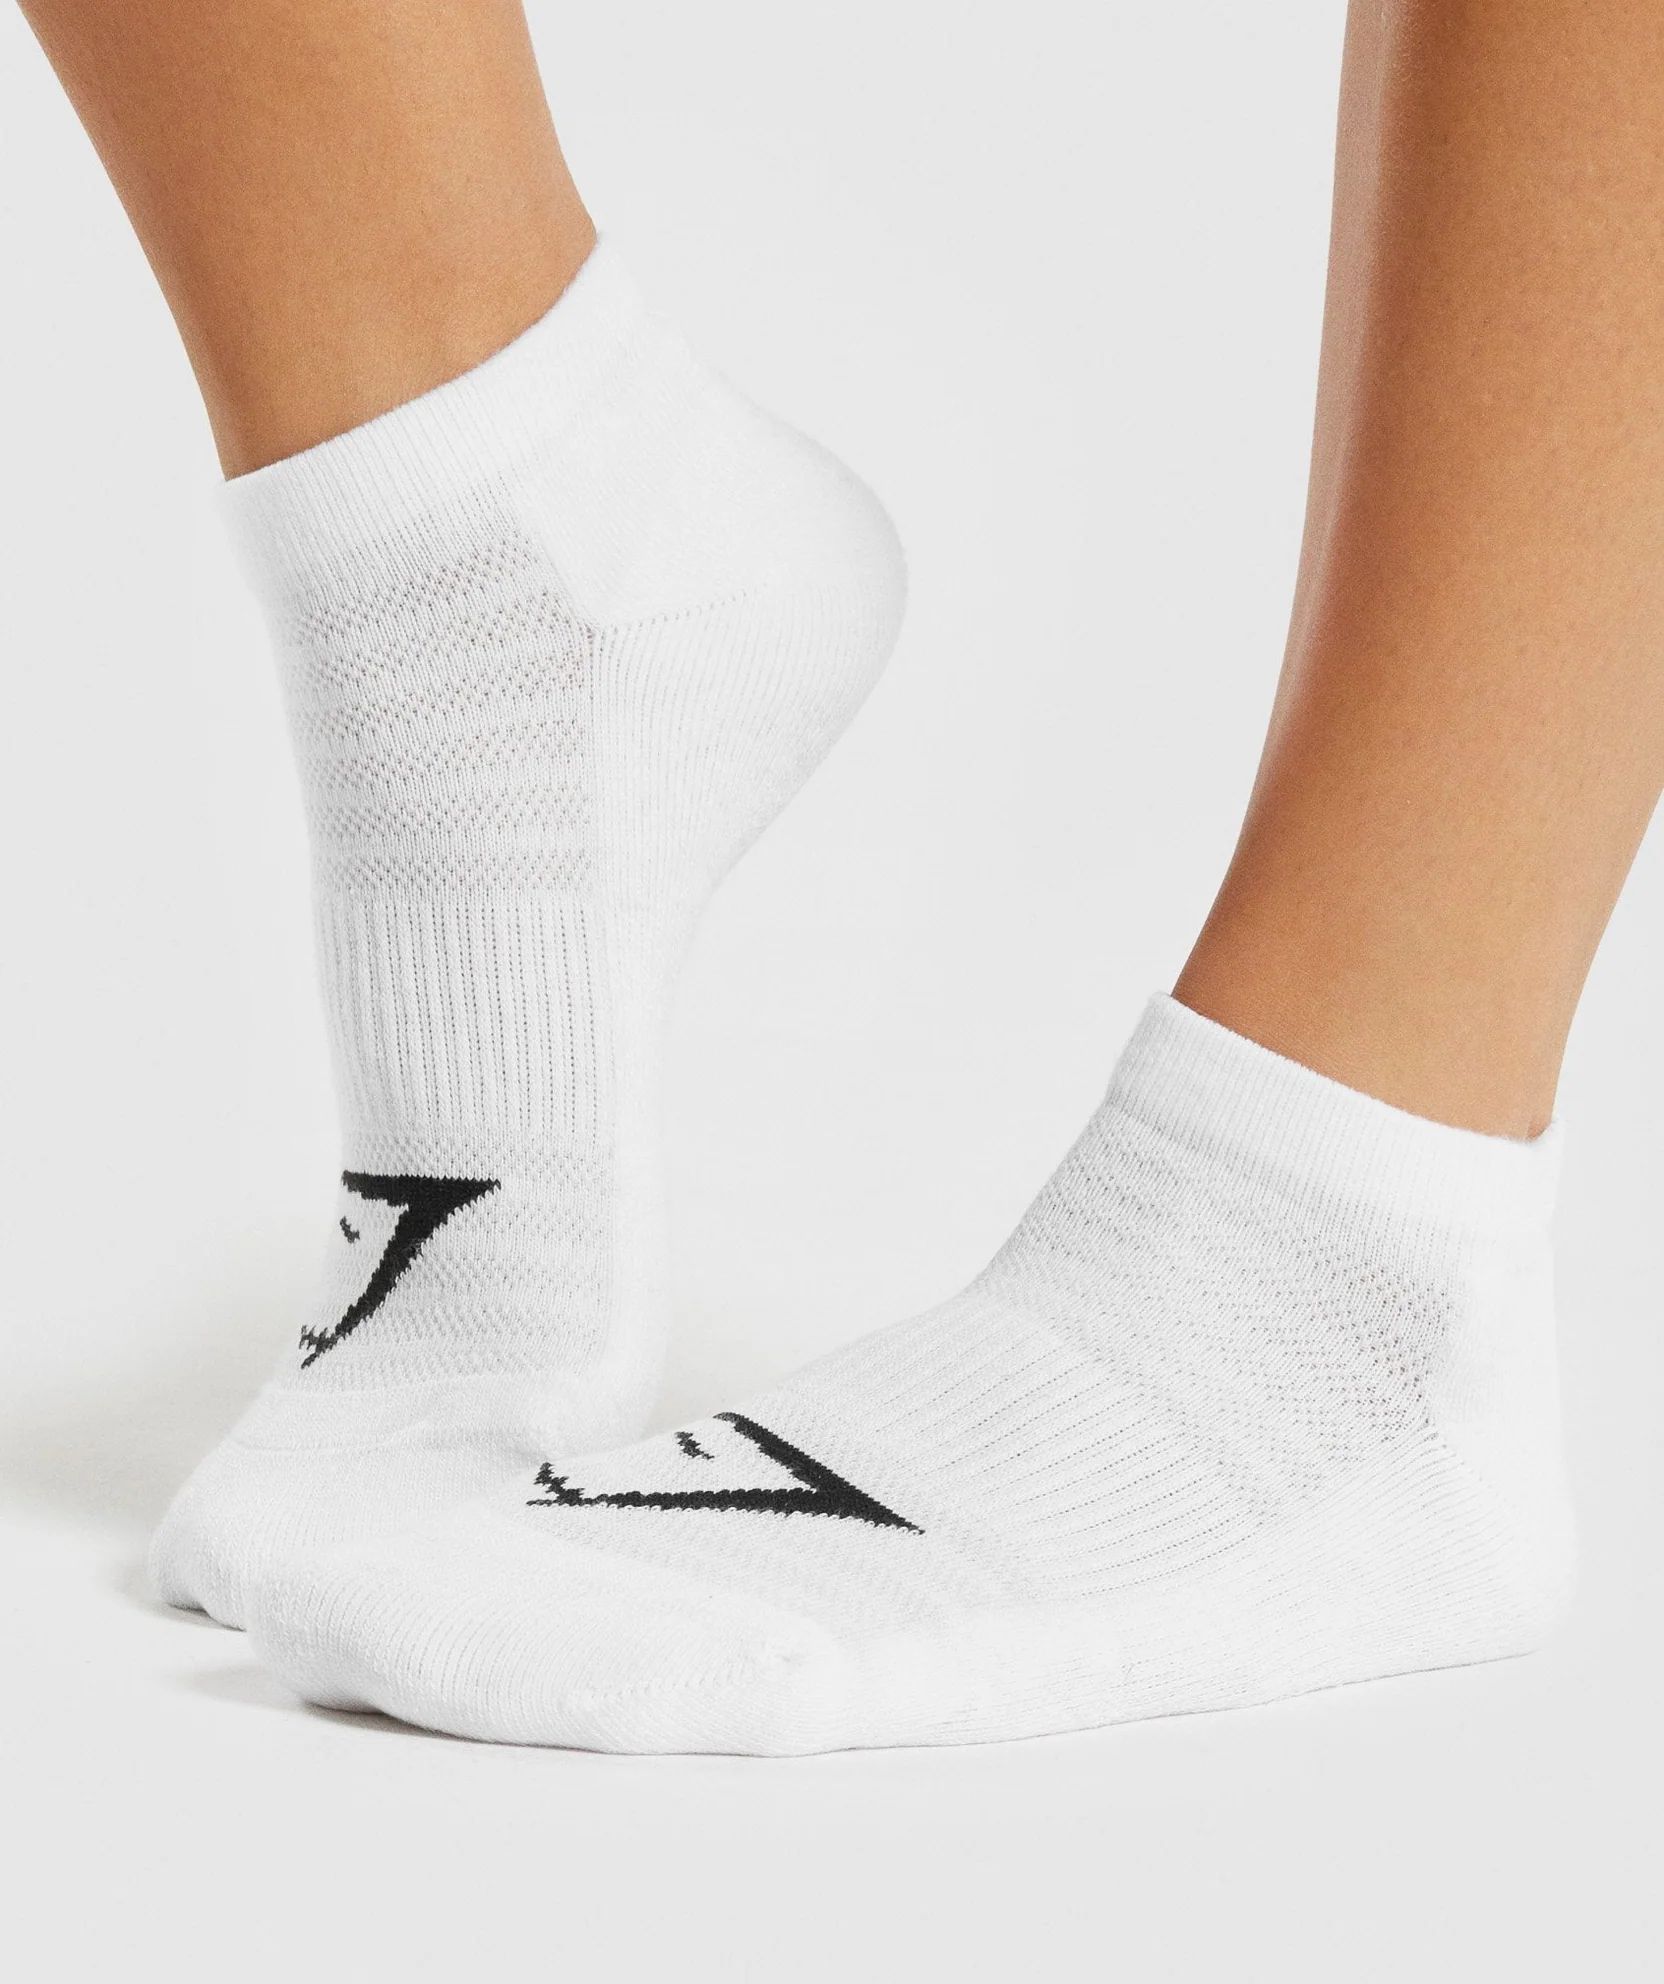 Gymshark Ankle Socks 3pk - White | Gymshark US